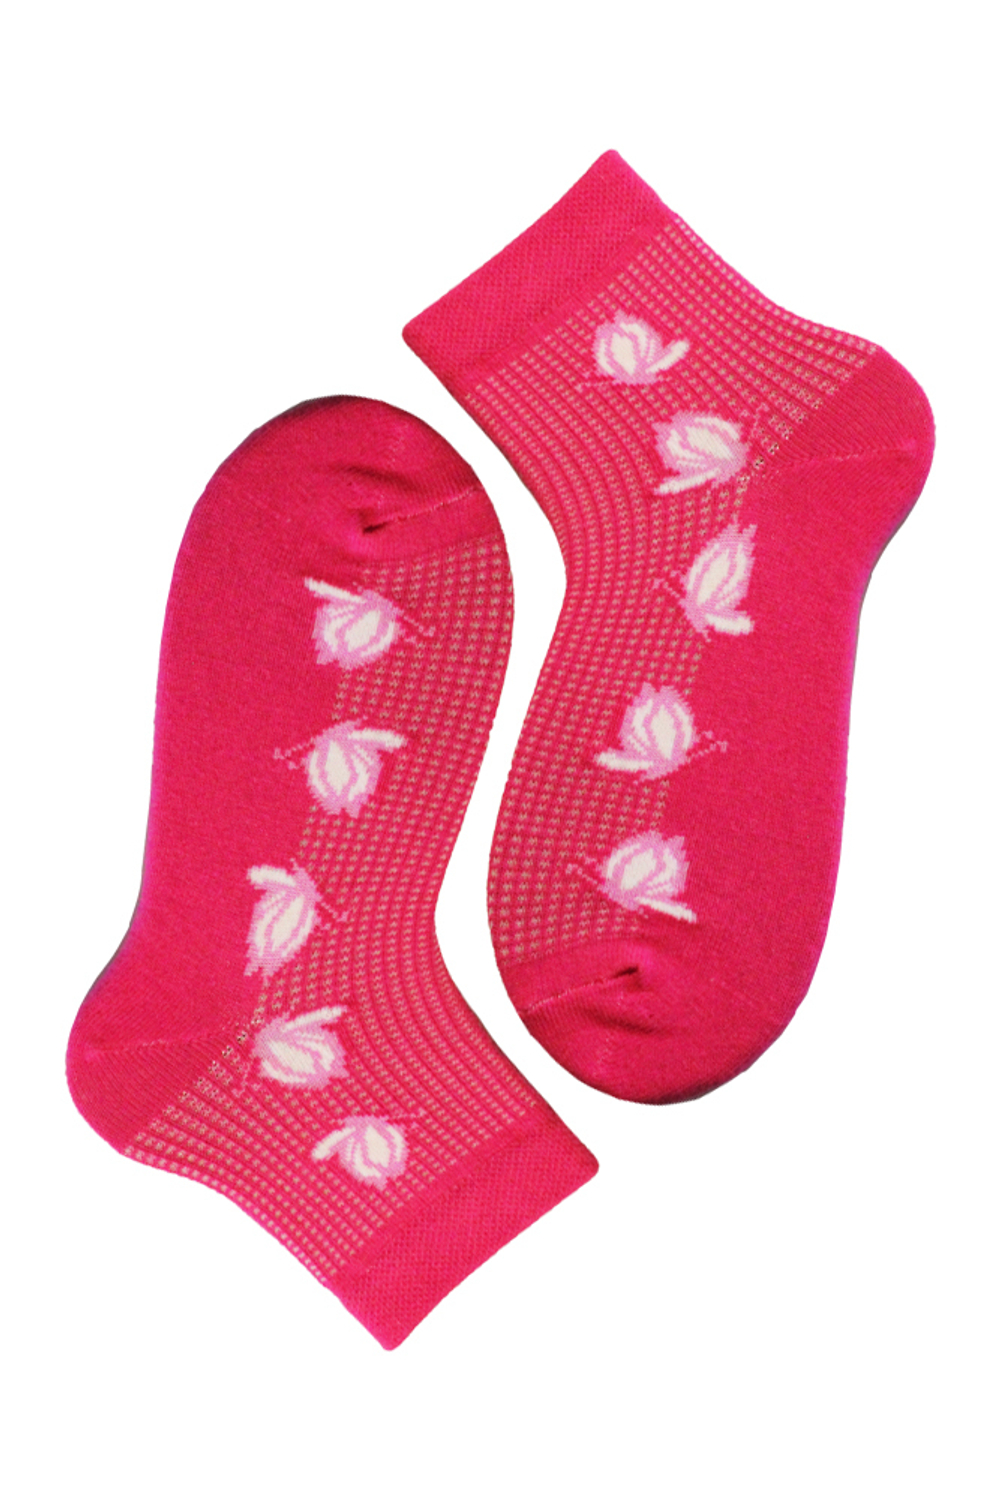 Носки детские для девочки (эффект ажура)